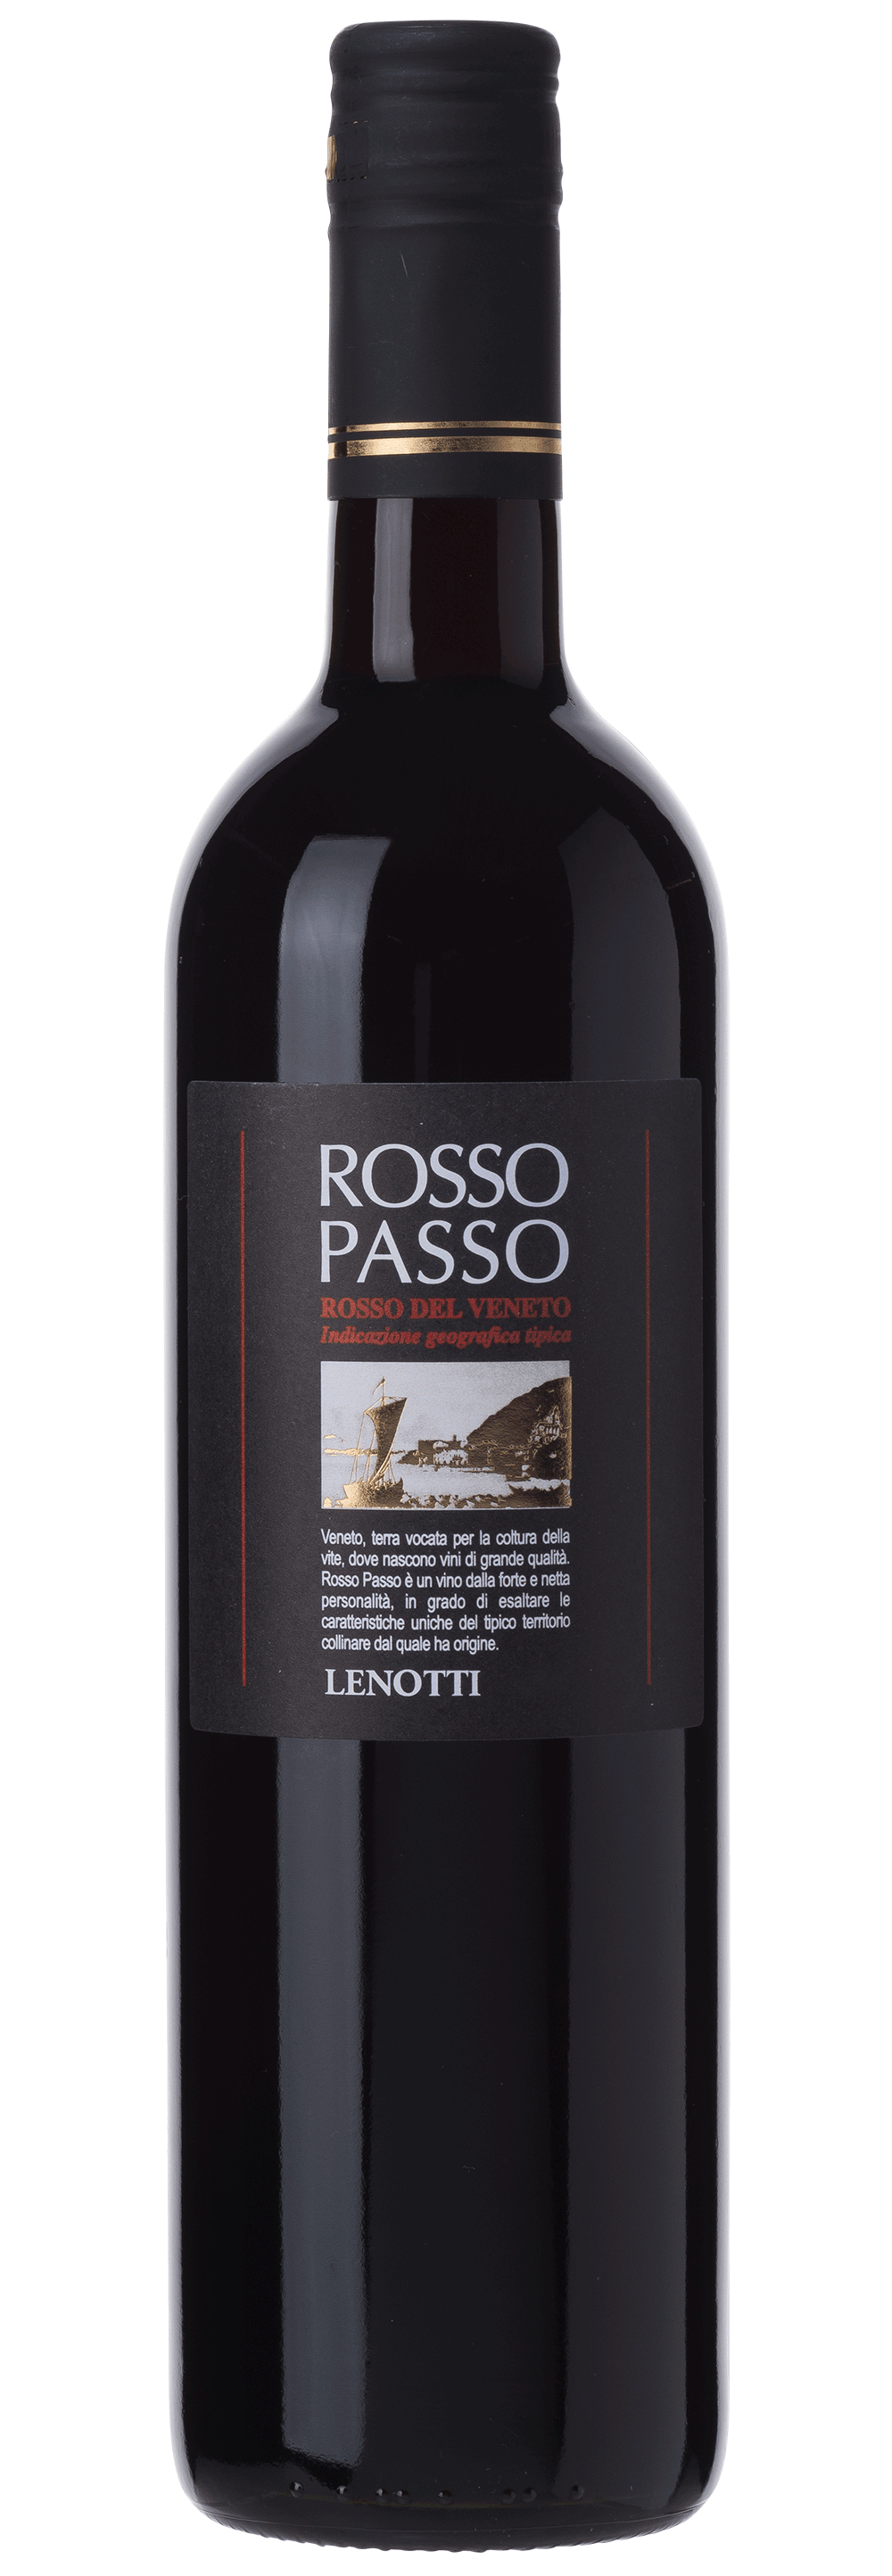 Rosso - Lenotti einfach guter - Passo Wein viDeli |